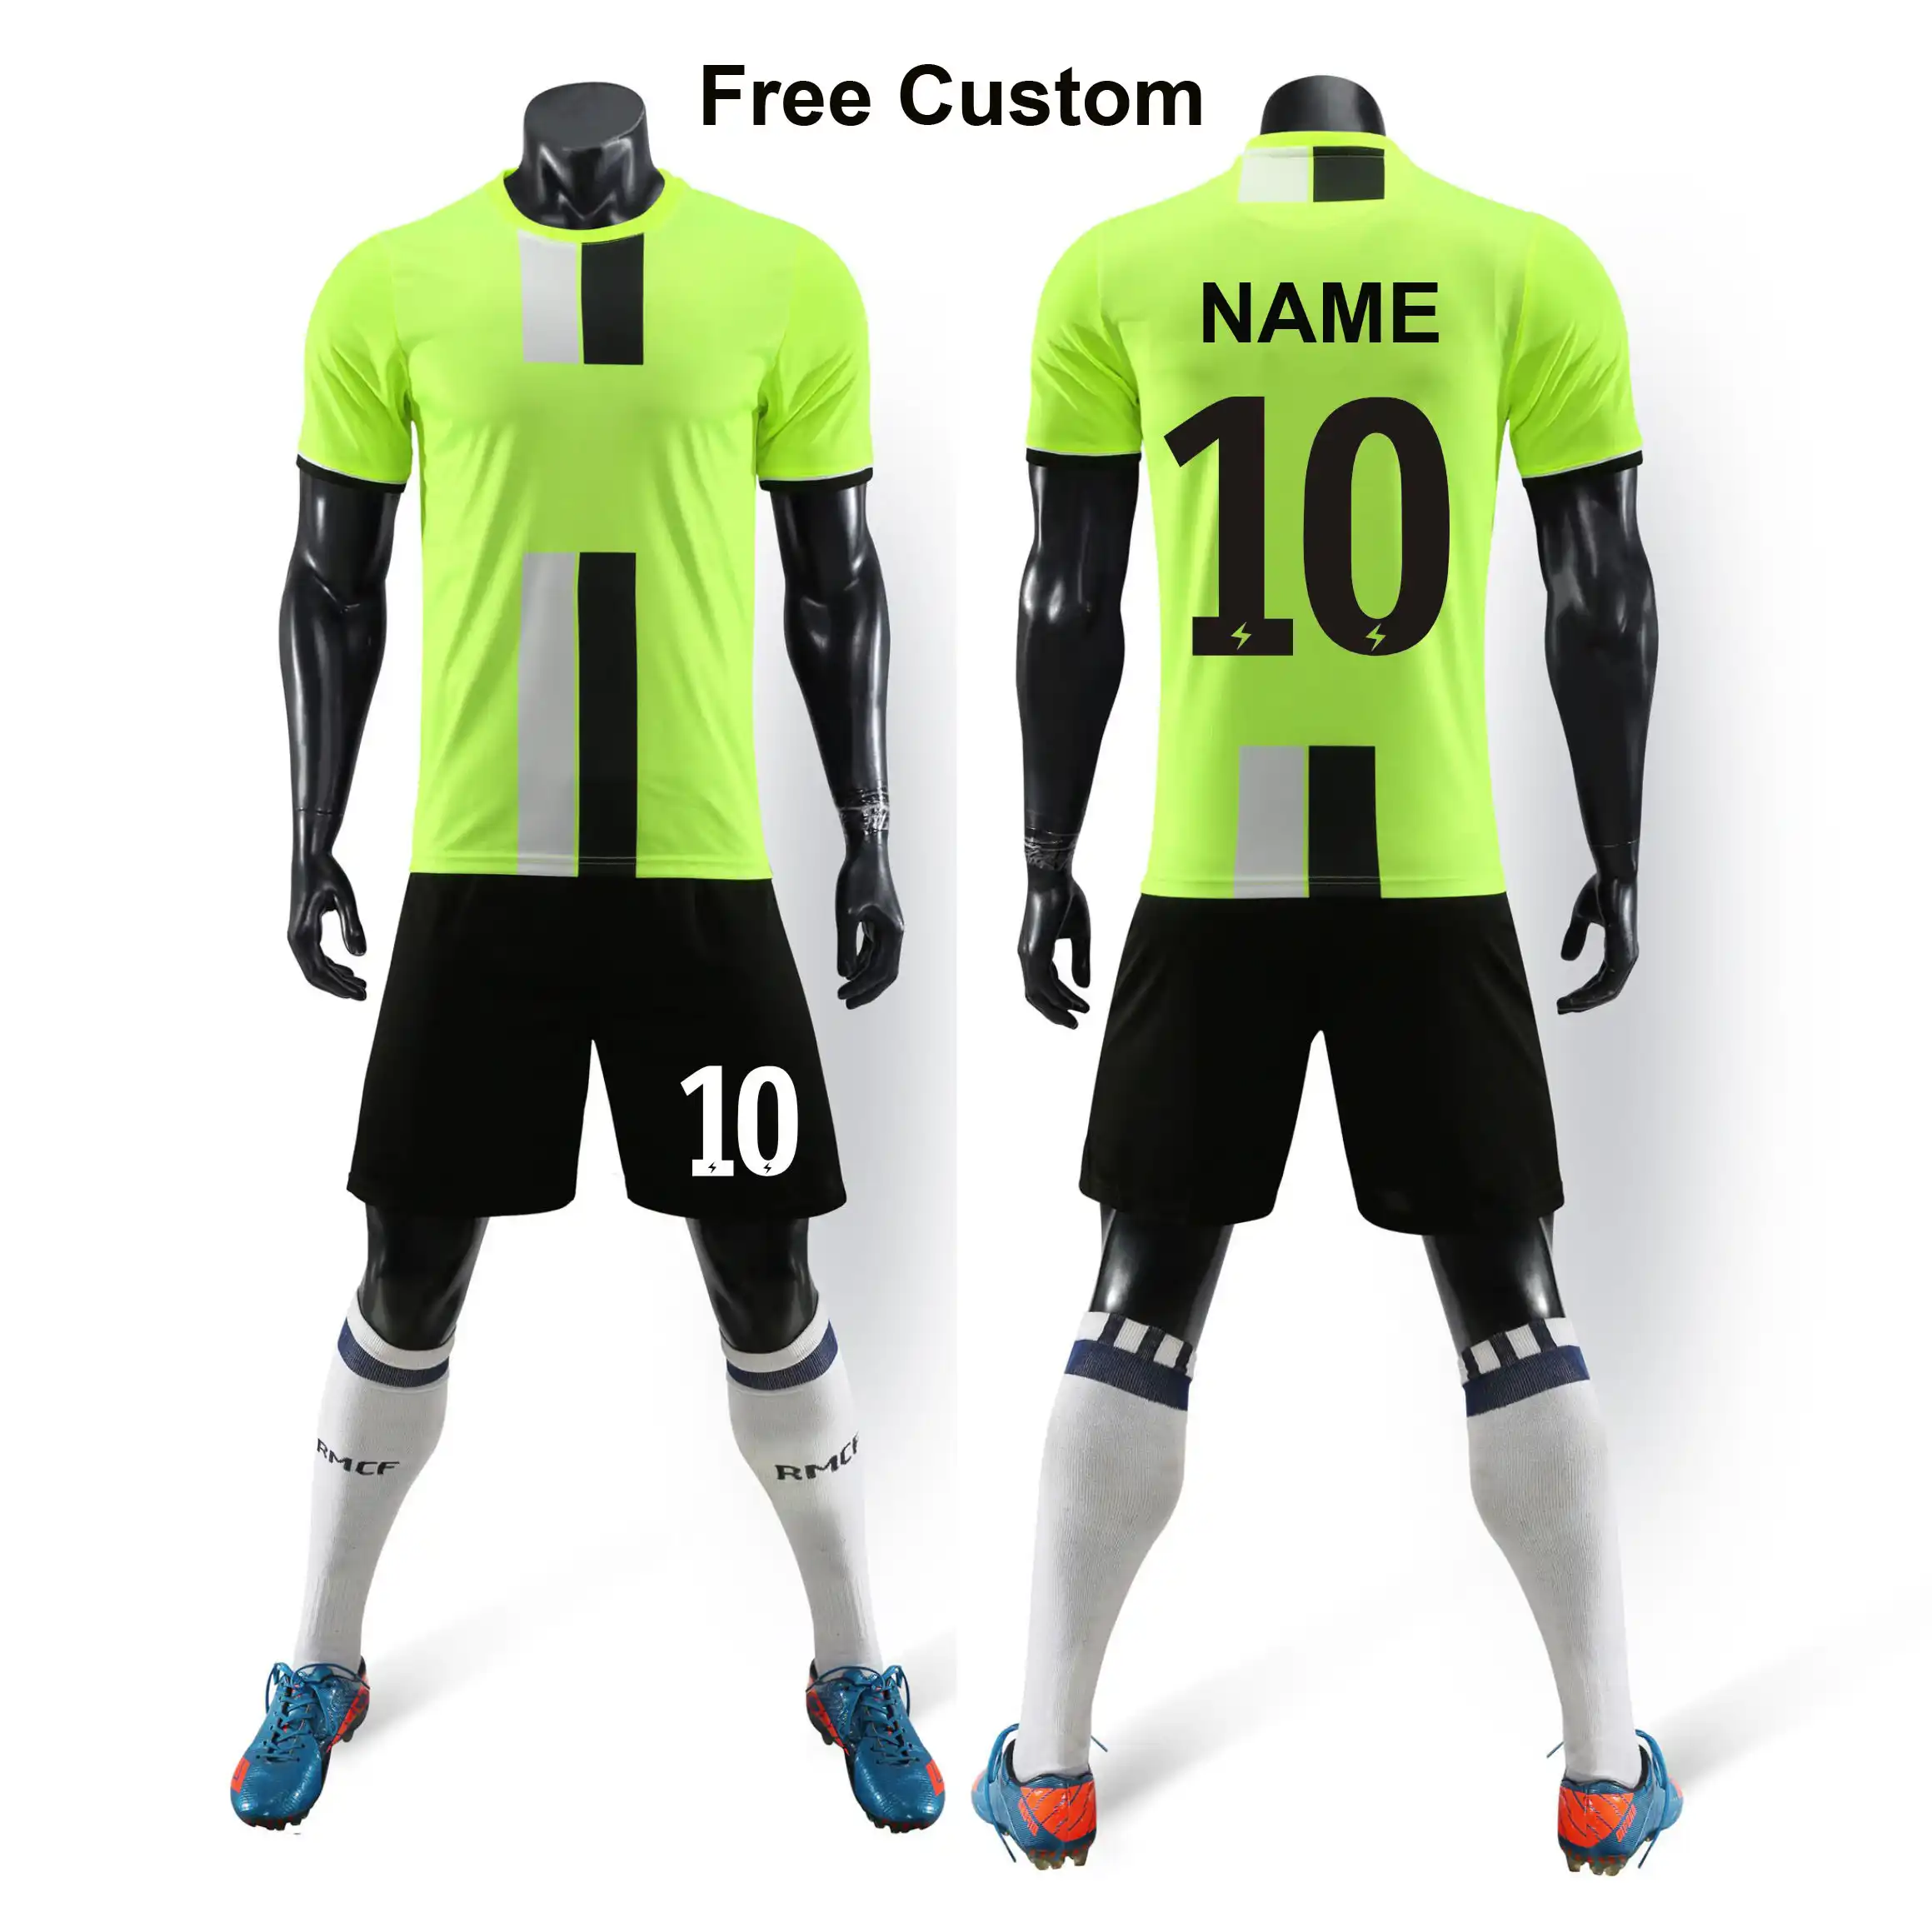 Free Custom Youth Soccer Jerseys Shorts 